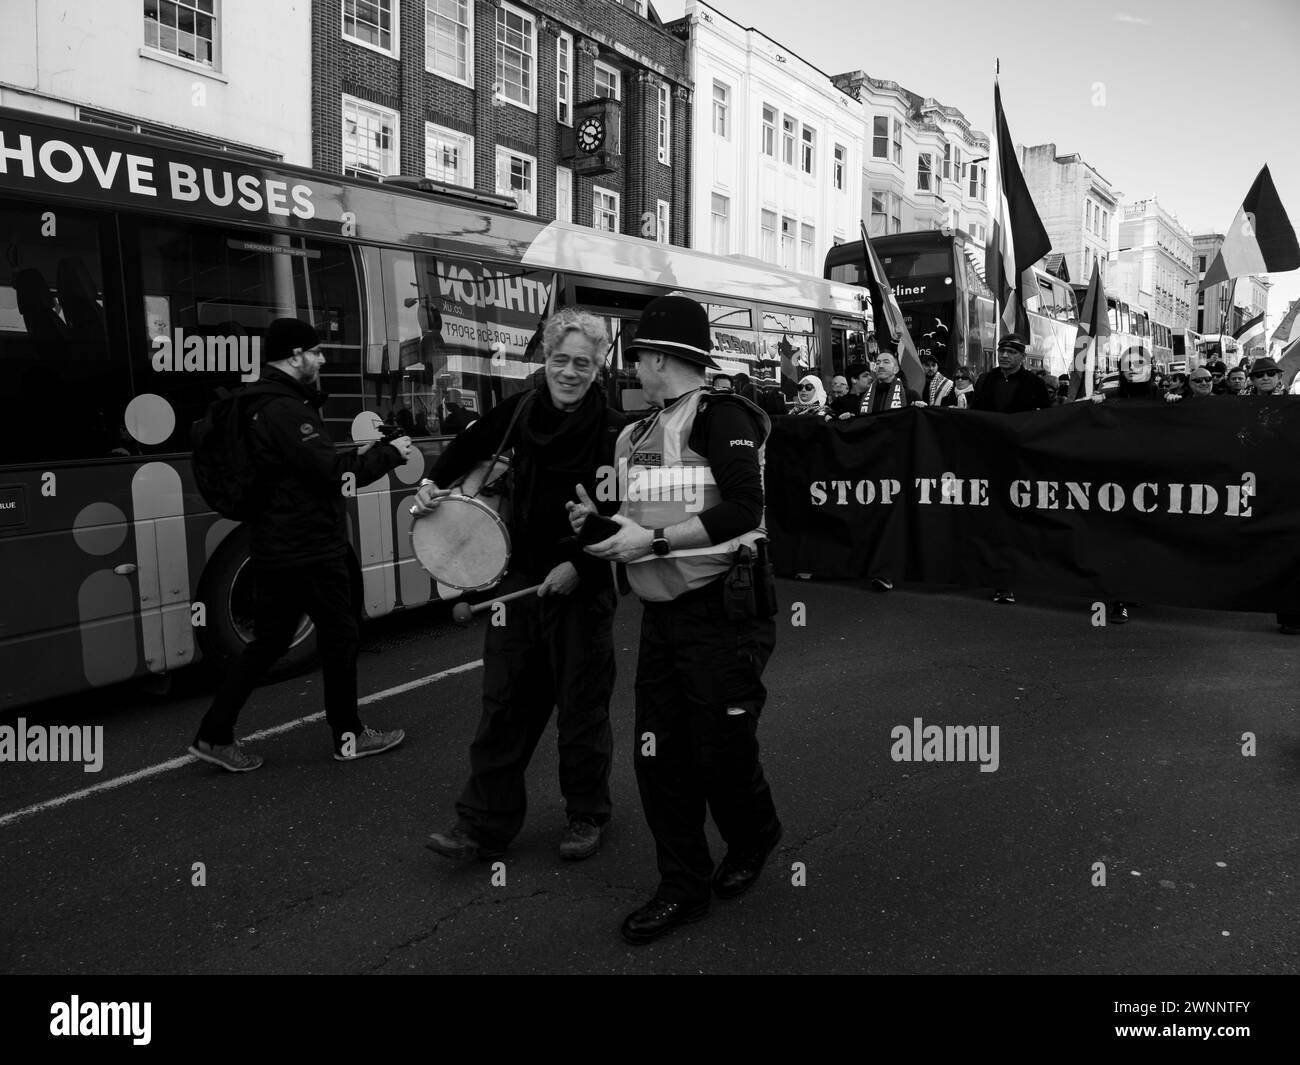 Gaza pone fin a la marcha del genocidio, en Brighton y Hove, una selección de imágenes tomadas del día en que la gente marchaba pacíficamente por la ciudad de Brighton, mostrando que no tienes que ser ruidoso para ser escuchado! Imágenes de reportajes, fotos de noticias, Foto de stock